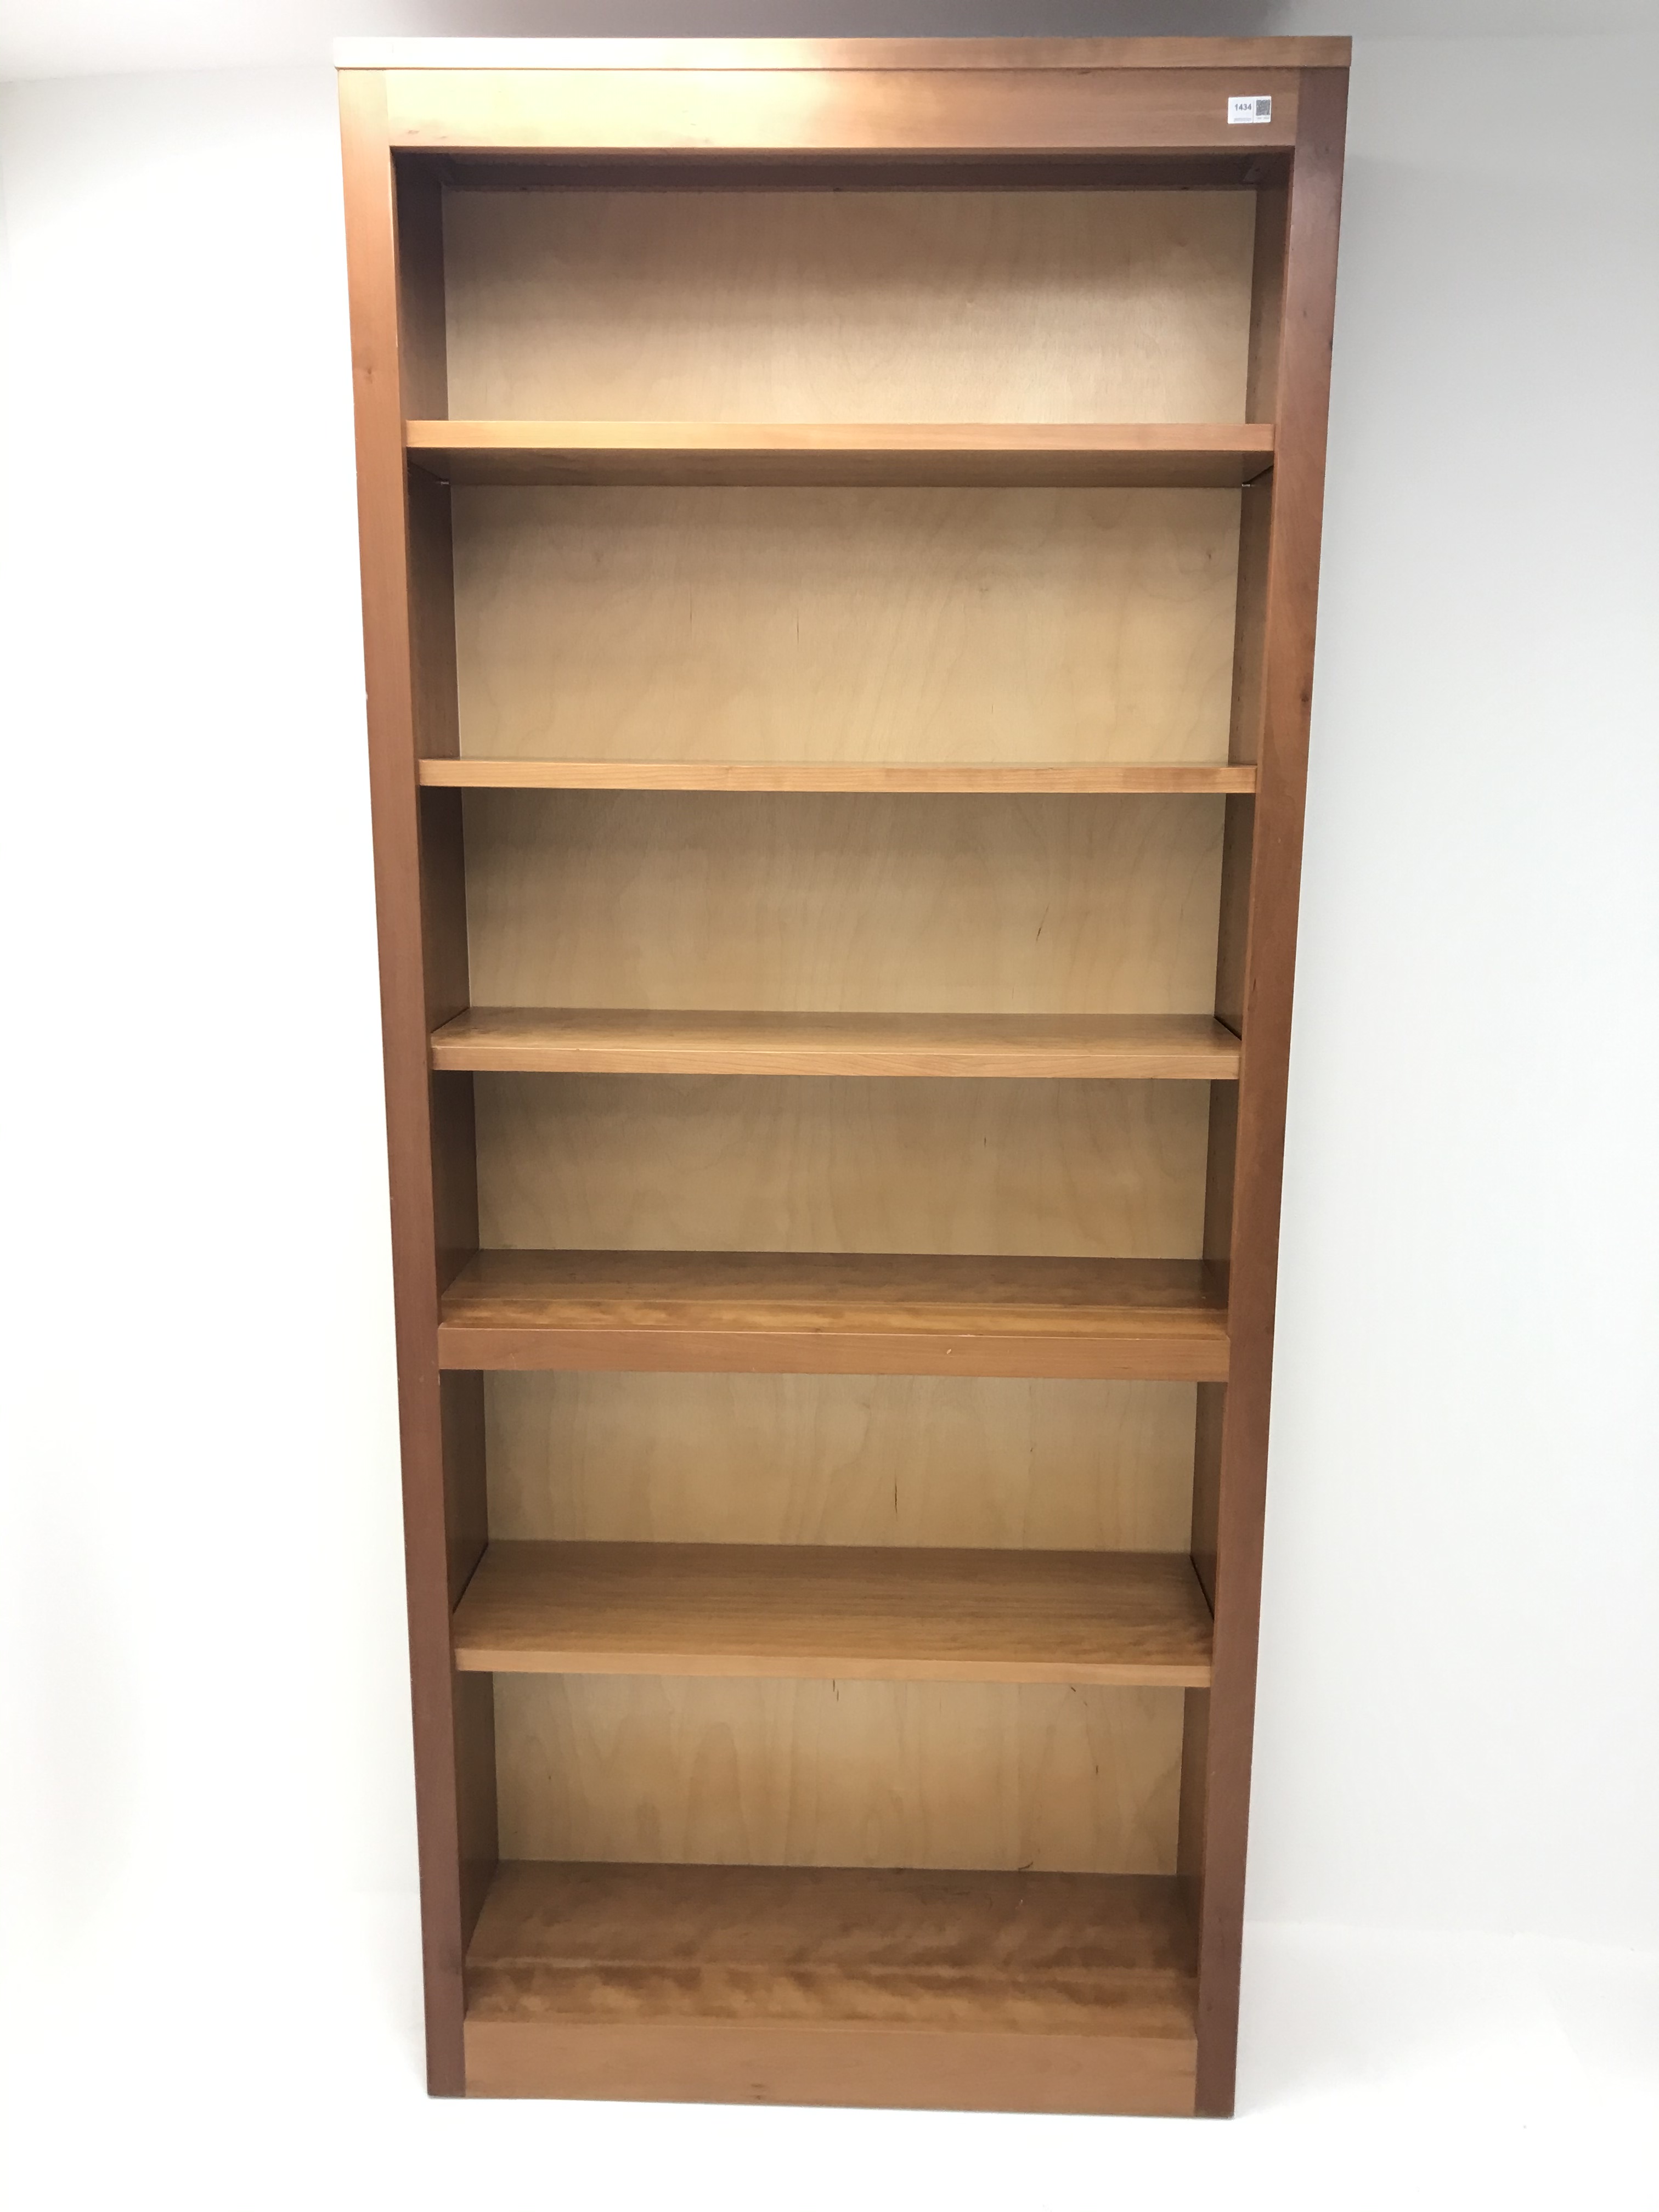 Cherry wood open bookcase, four adjustable shelves, plinth base, W92cm, H215cm, - Image 2 of 2